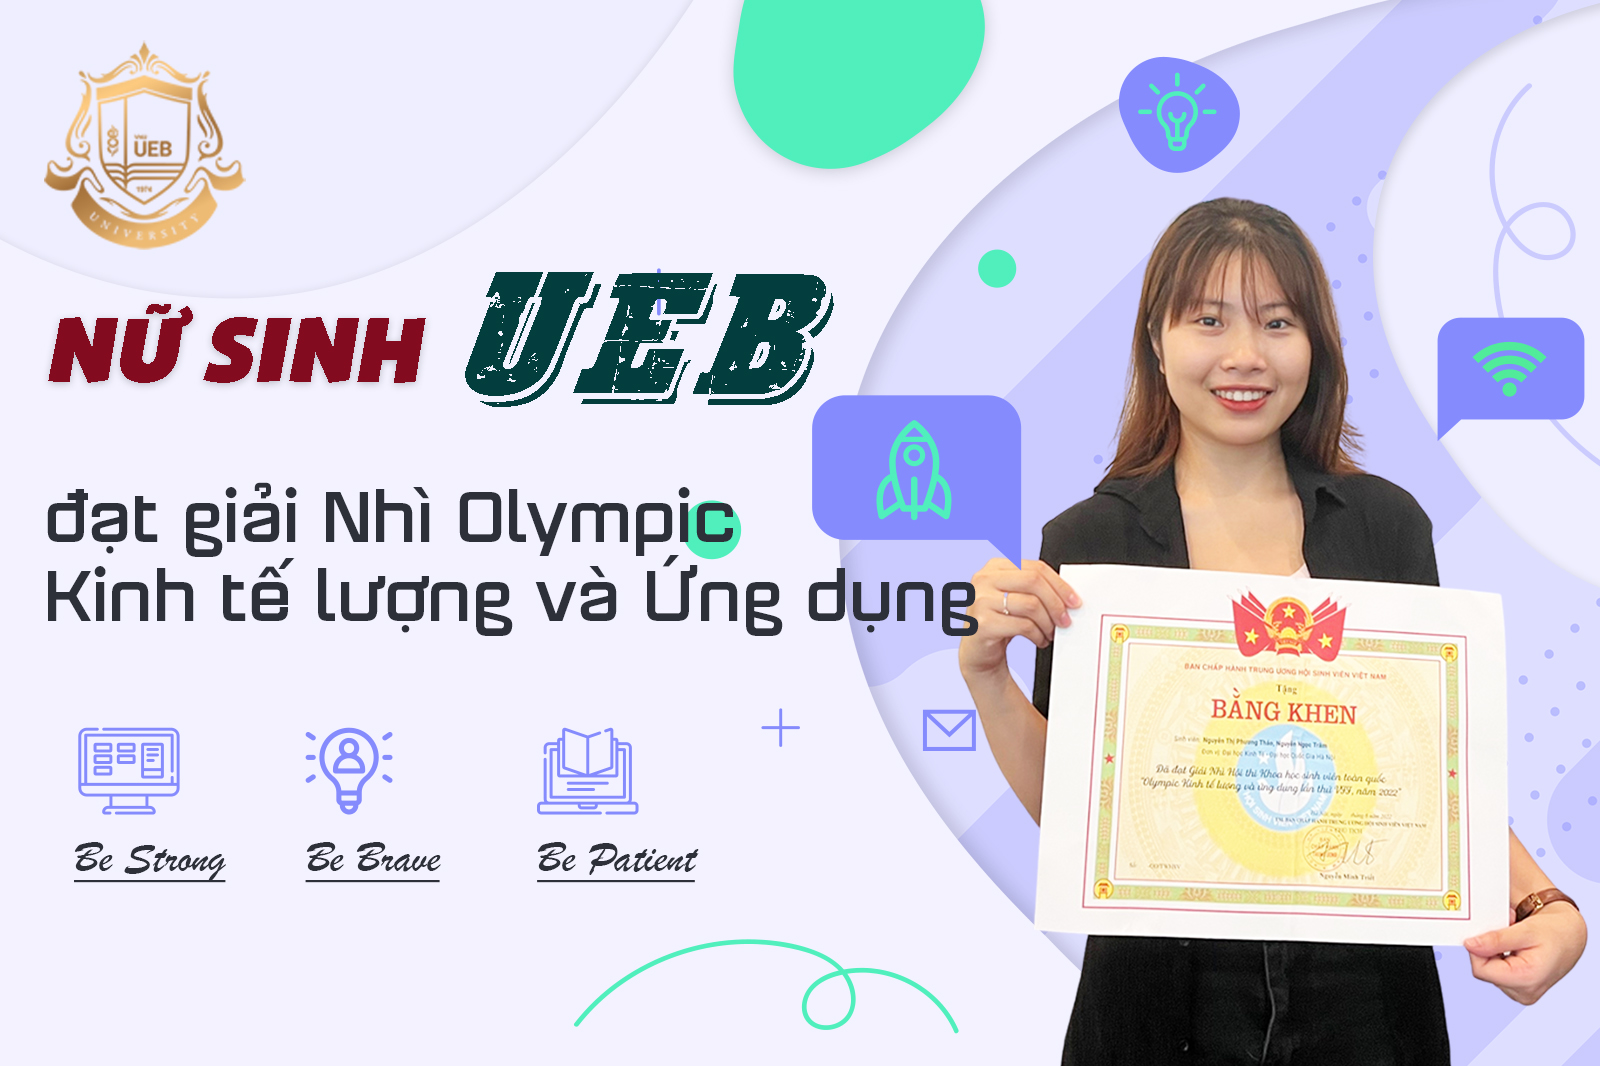 Nữ sinh UEB đạt giải Nhì Olympic Kinh tế lượng và Ứng dụng: “Năng khiếu chỉ là một phần, quan trọng vẫn là đam mê và kiên trì học hỏi”